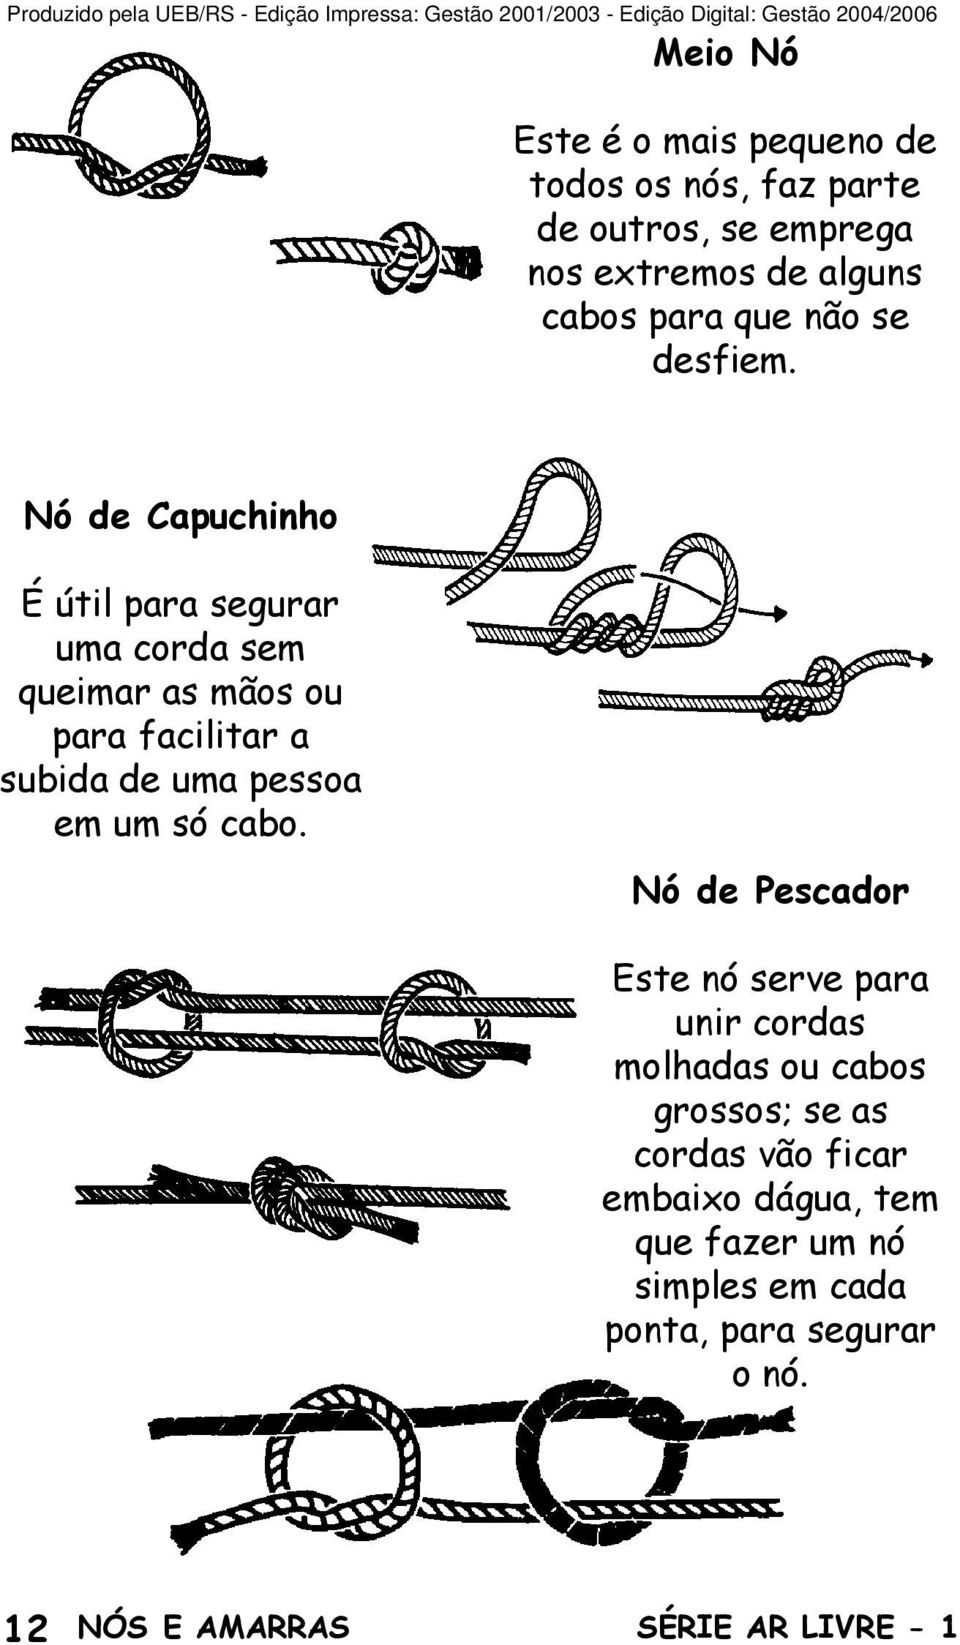 Nó de Capuchinho É útil para segurar uma corda sem queimar as mãos ou para facilitar a subida de uma pessoa em